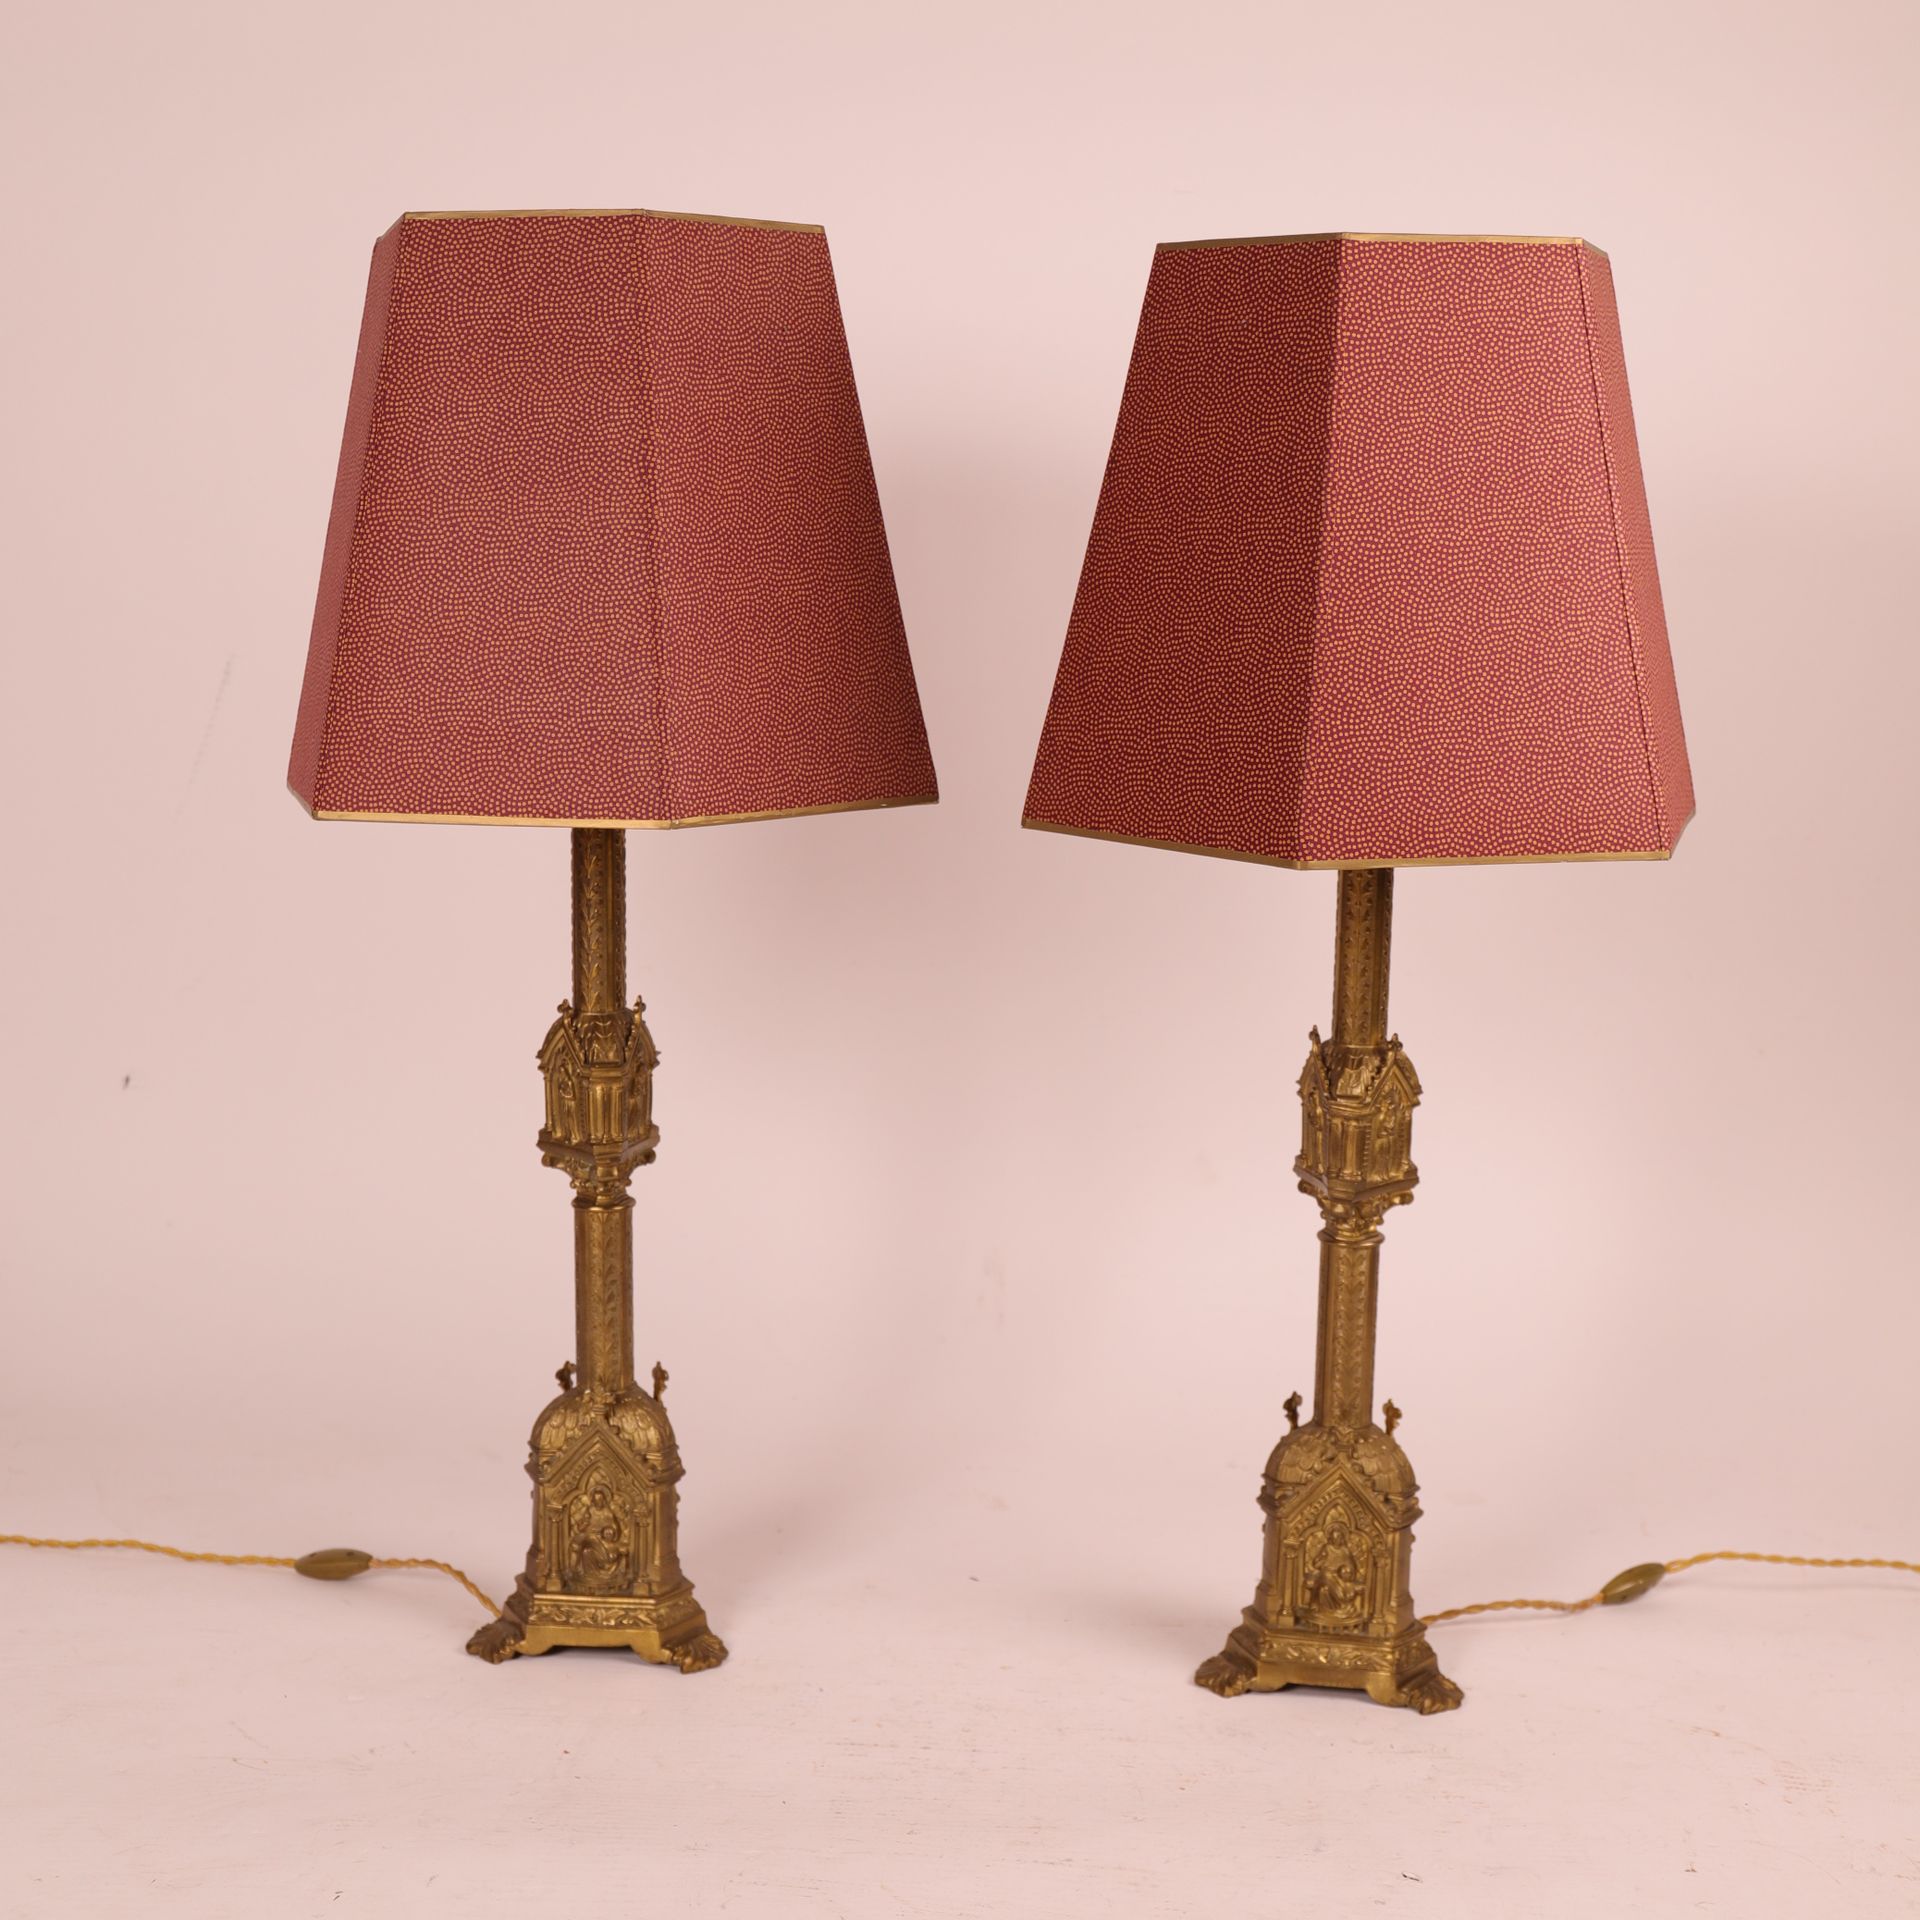 Null 一对新哥特式灯具
镀金黄铜三脚架轴
六角形灯罩
20 世纪早期
高：56.5 厘米（不包括灯罩）